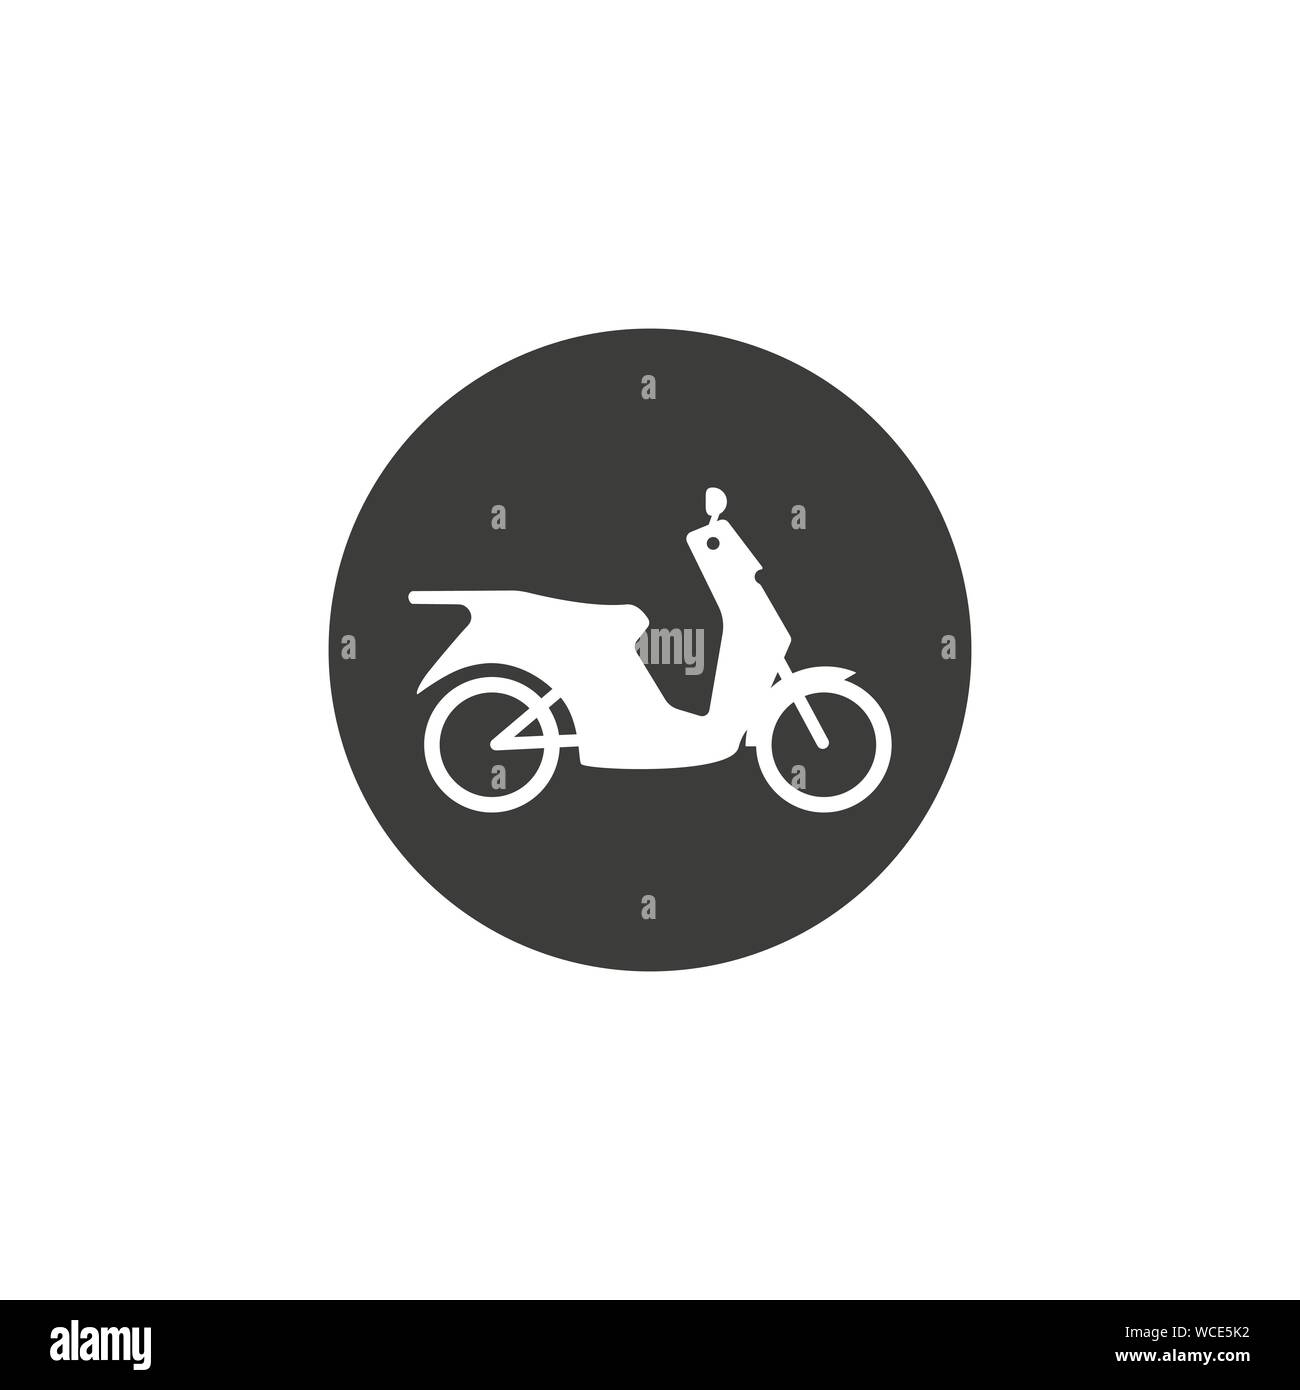 Motorrad, Motorrad-Symbol. Vector Illustration, flache Bauform. Stock Vektor